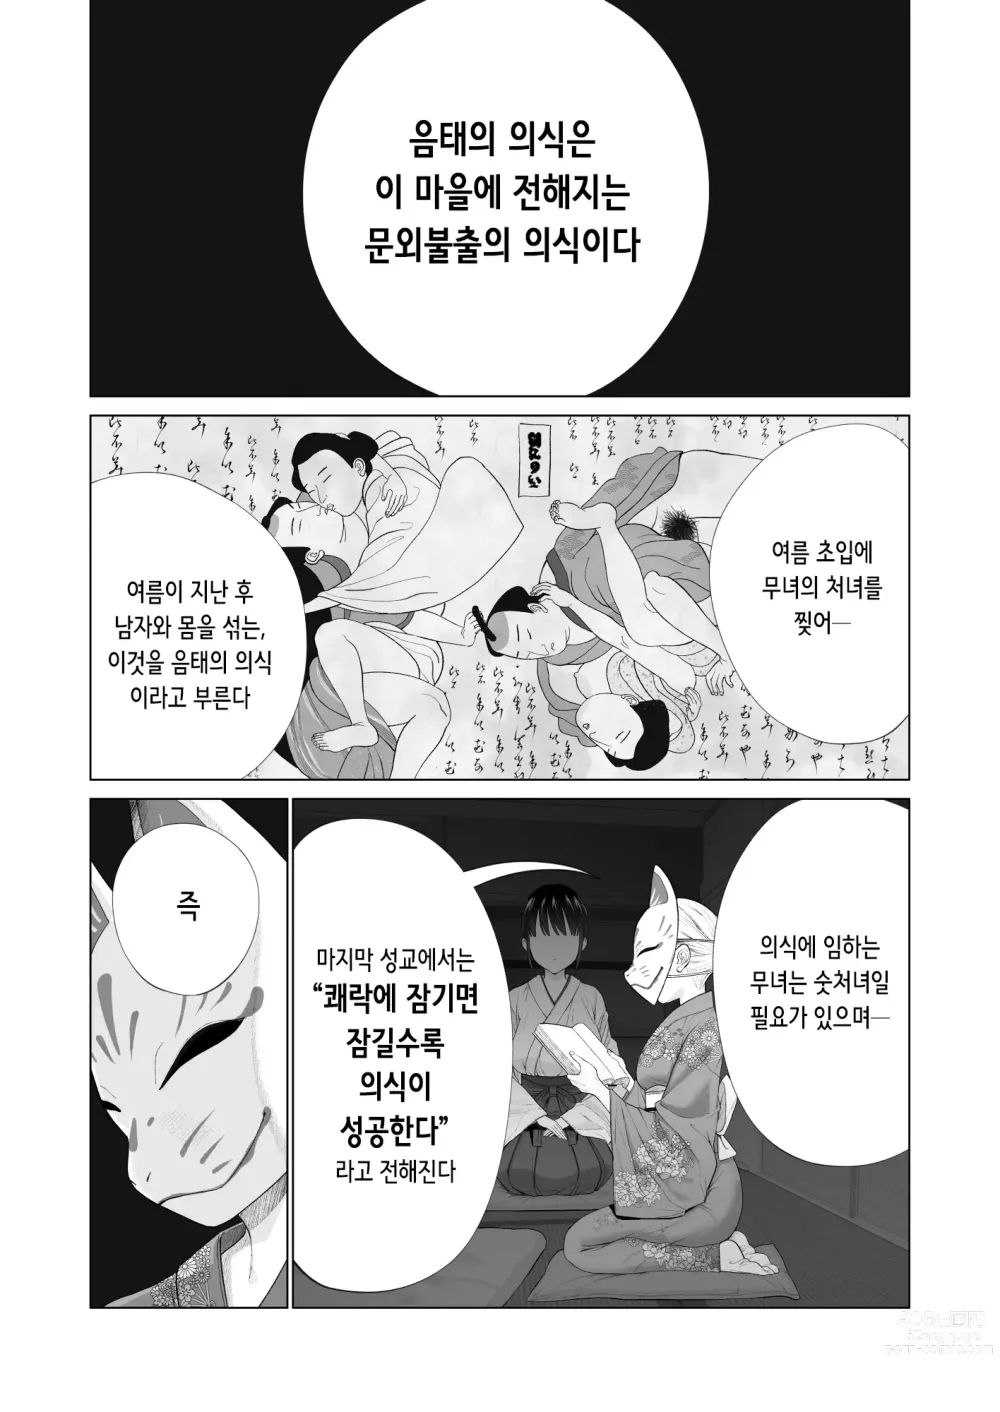 Page 4 of doujinshi 음태의 의식